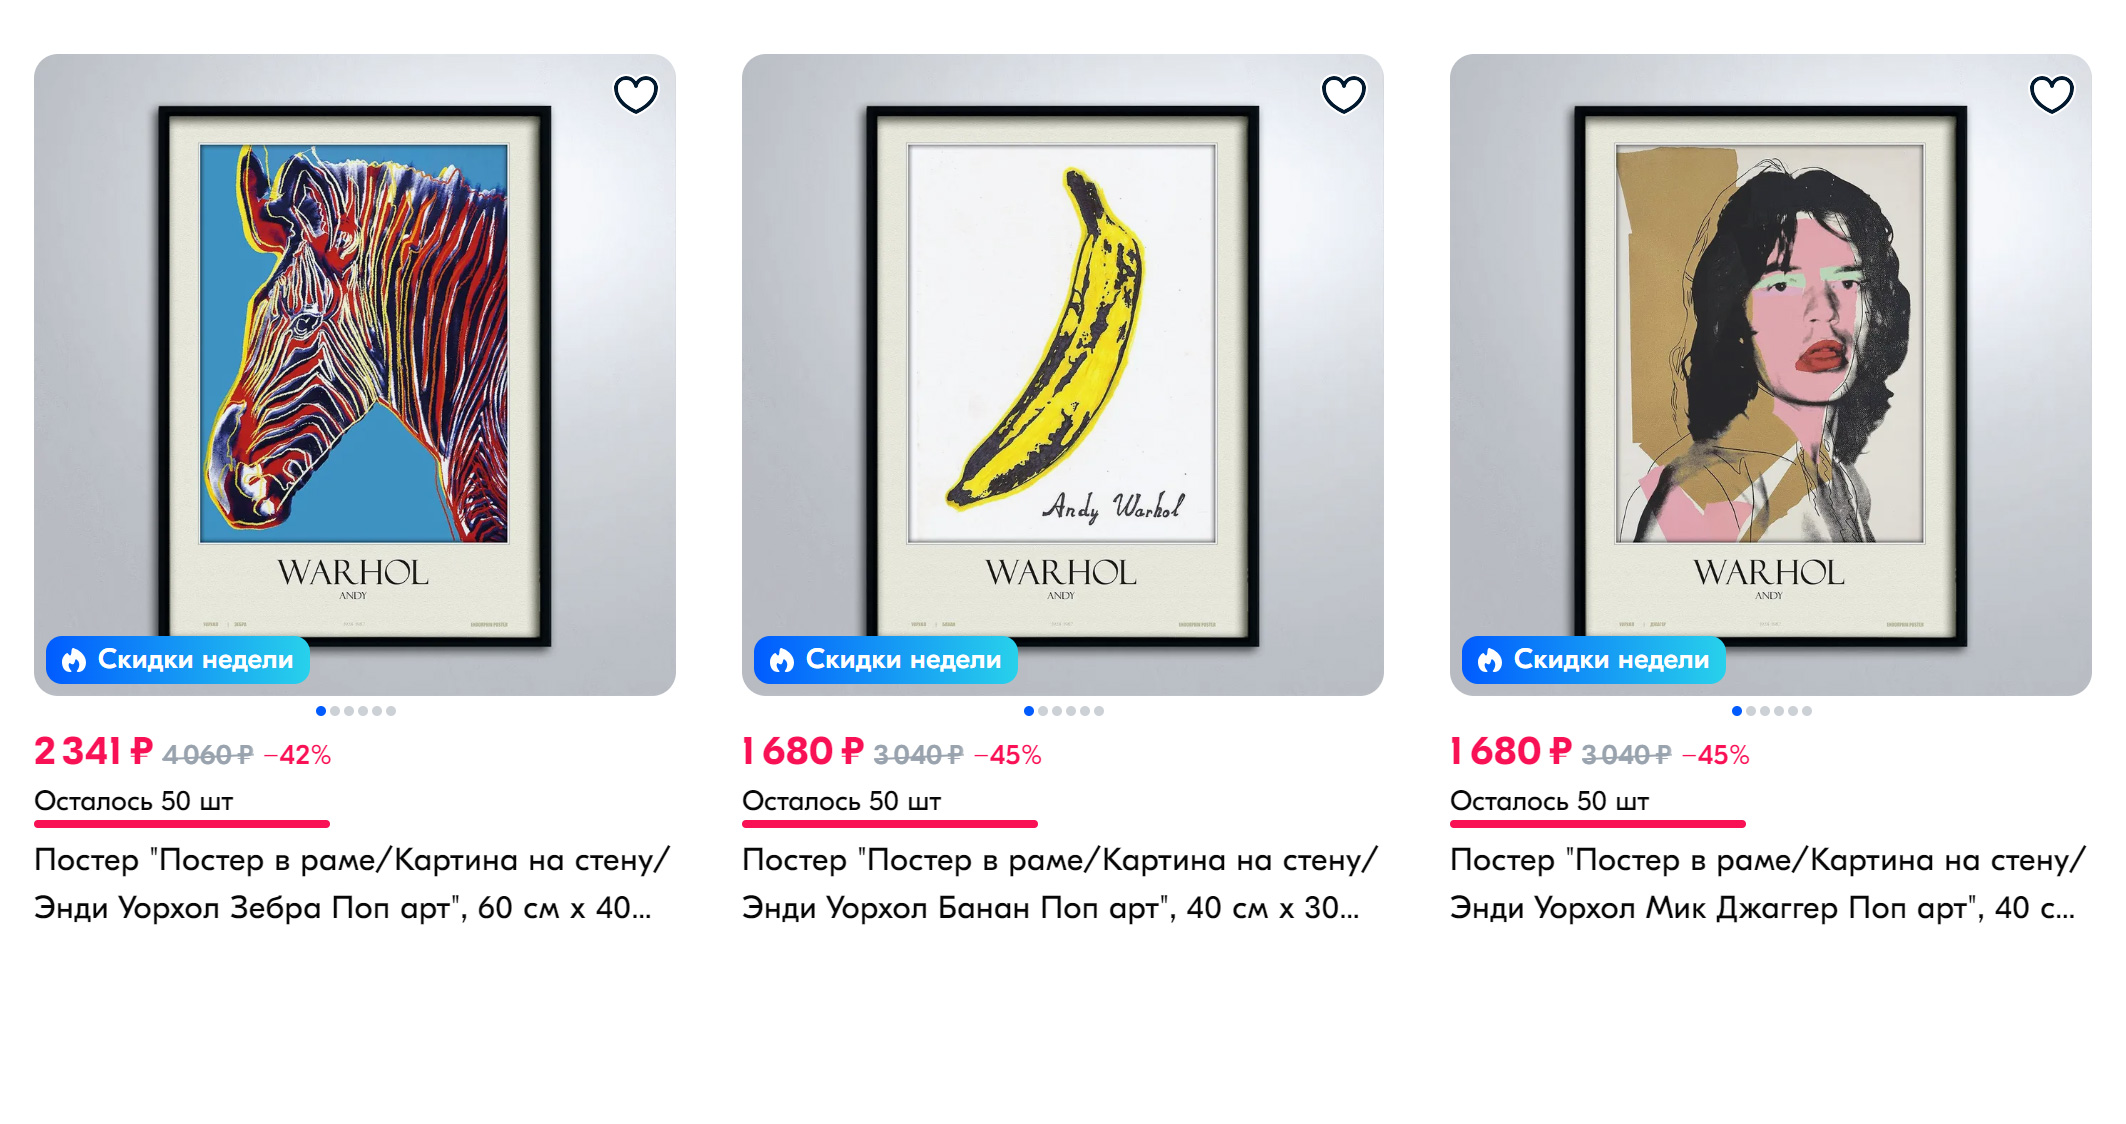 Копии произведений популярных поп⁠-⁠арт-художников легко купить на маркетплейсах. Используйте для них лаконичные рамки. Источник: ozon.ru